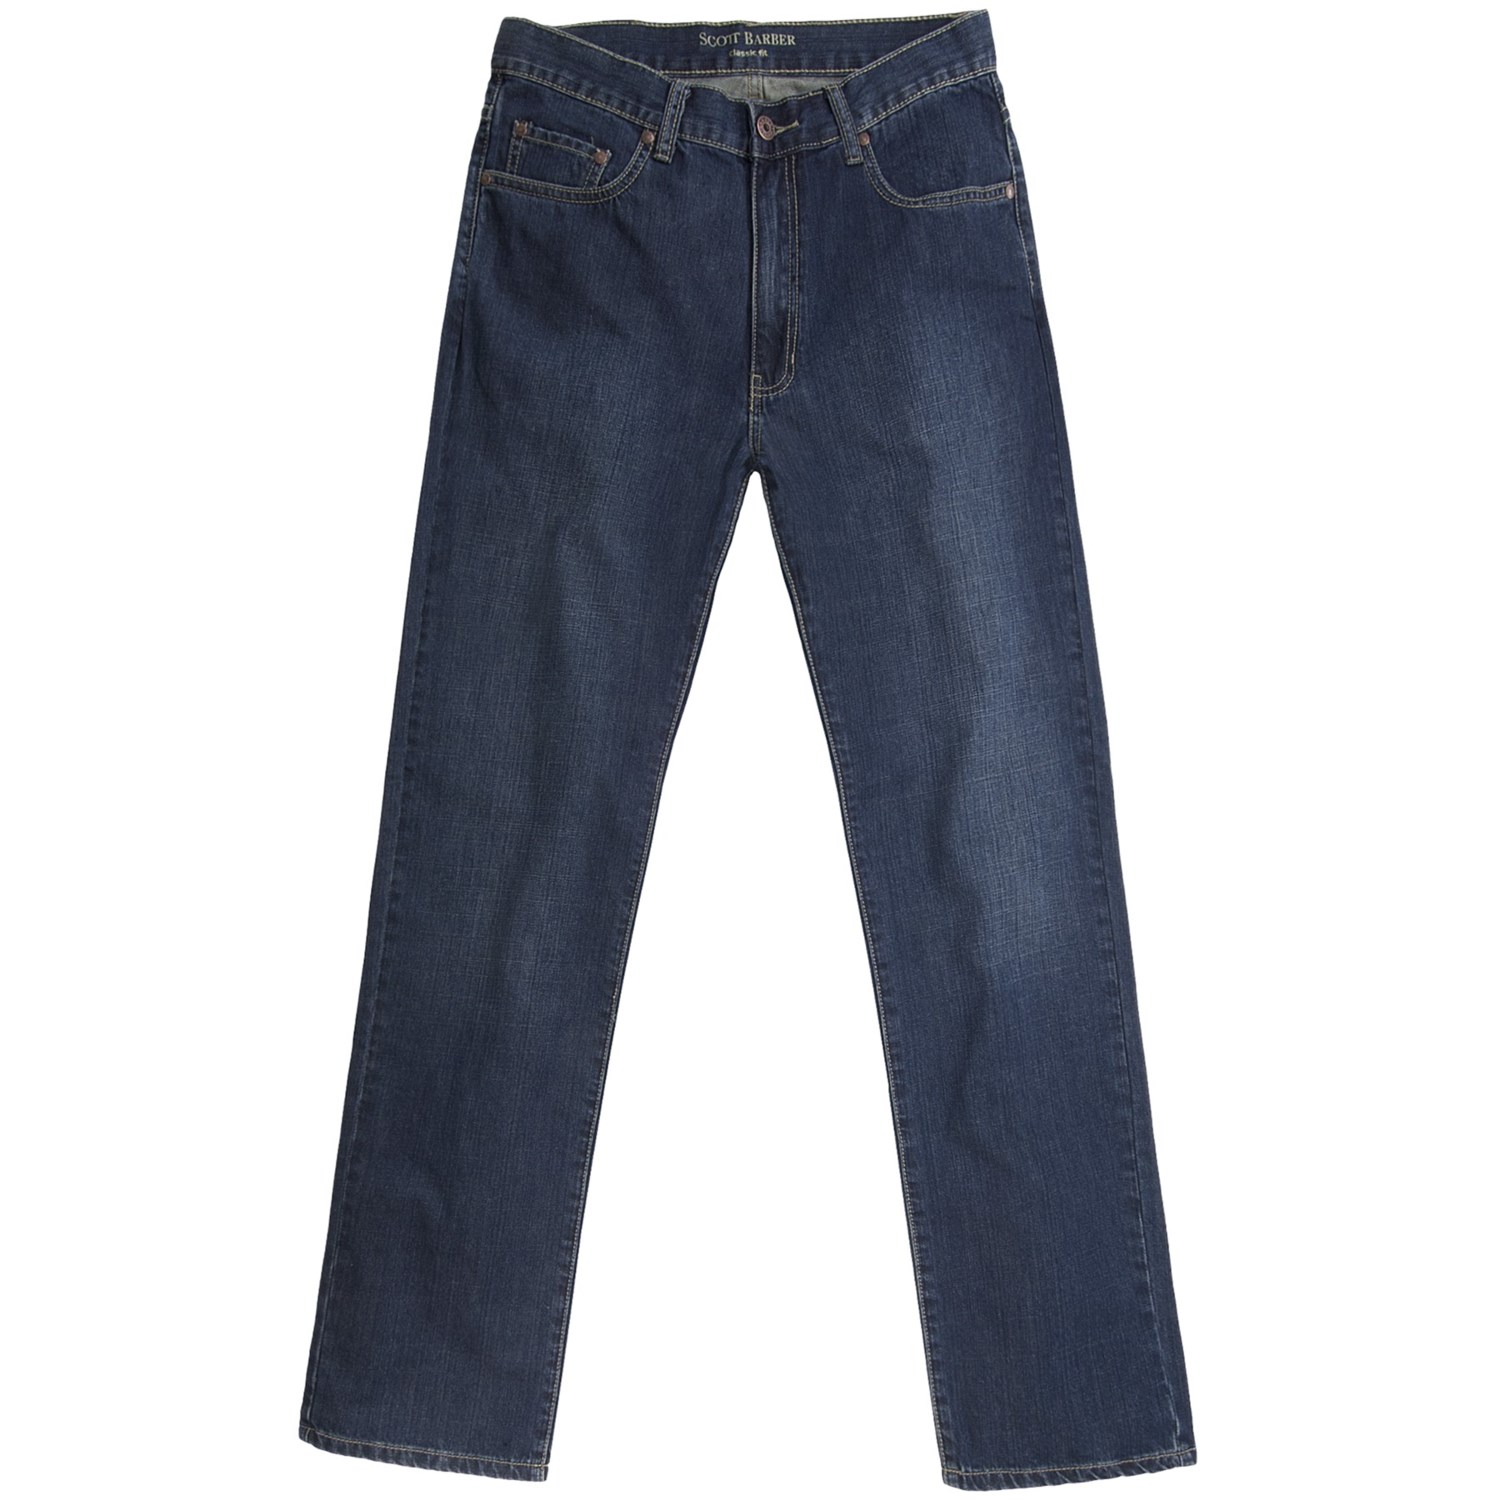 Scott Barber Denim Jeans (For Men) 4807M - Save 80%